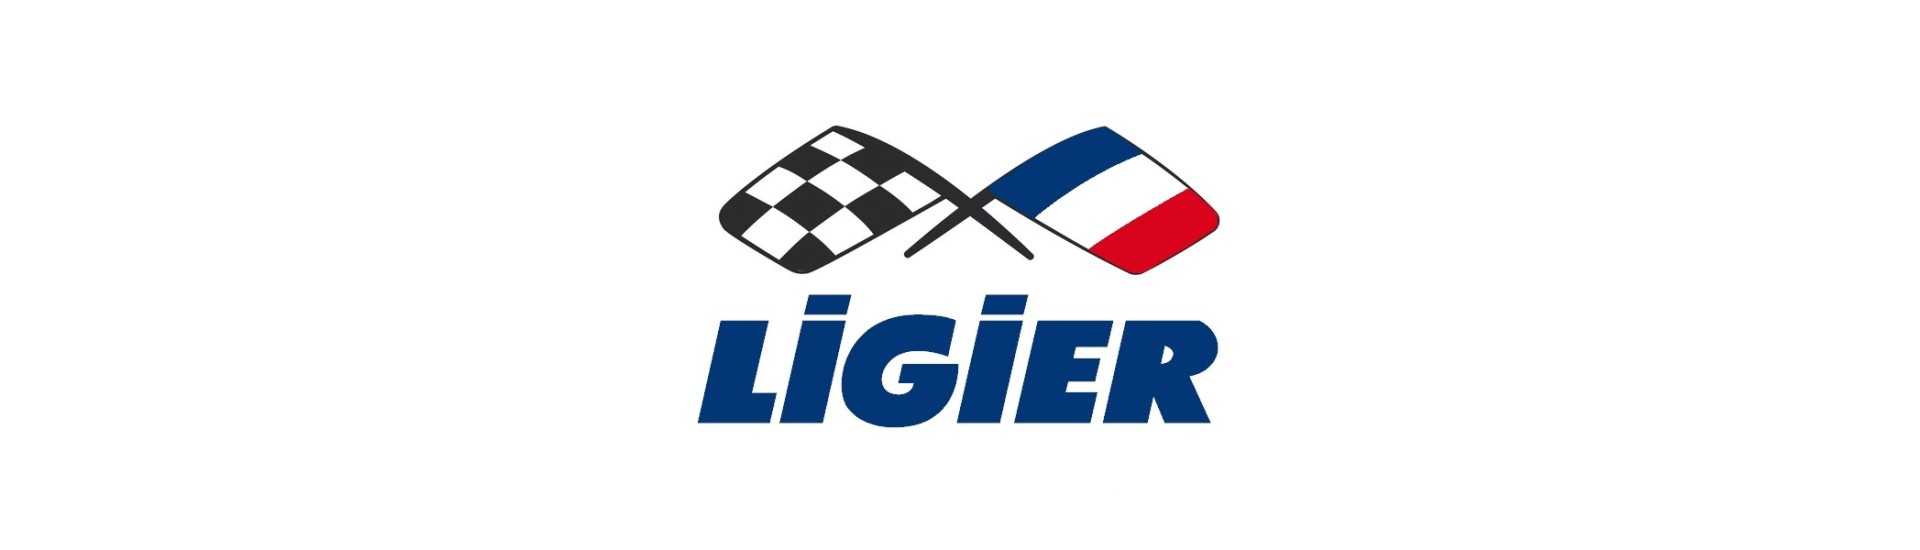 Motor variante al mejor precio para coche sin permiso Ligier